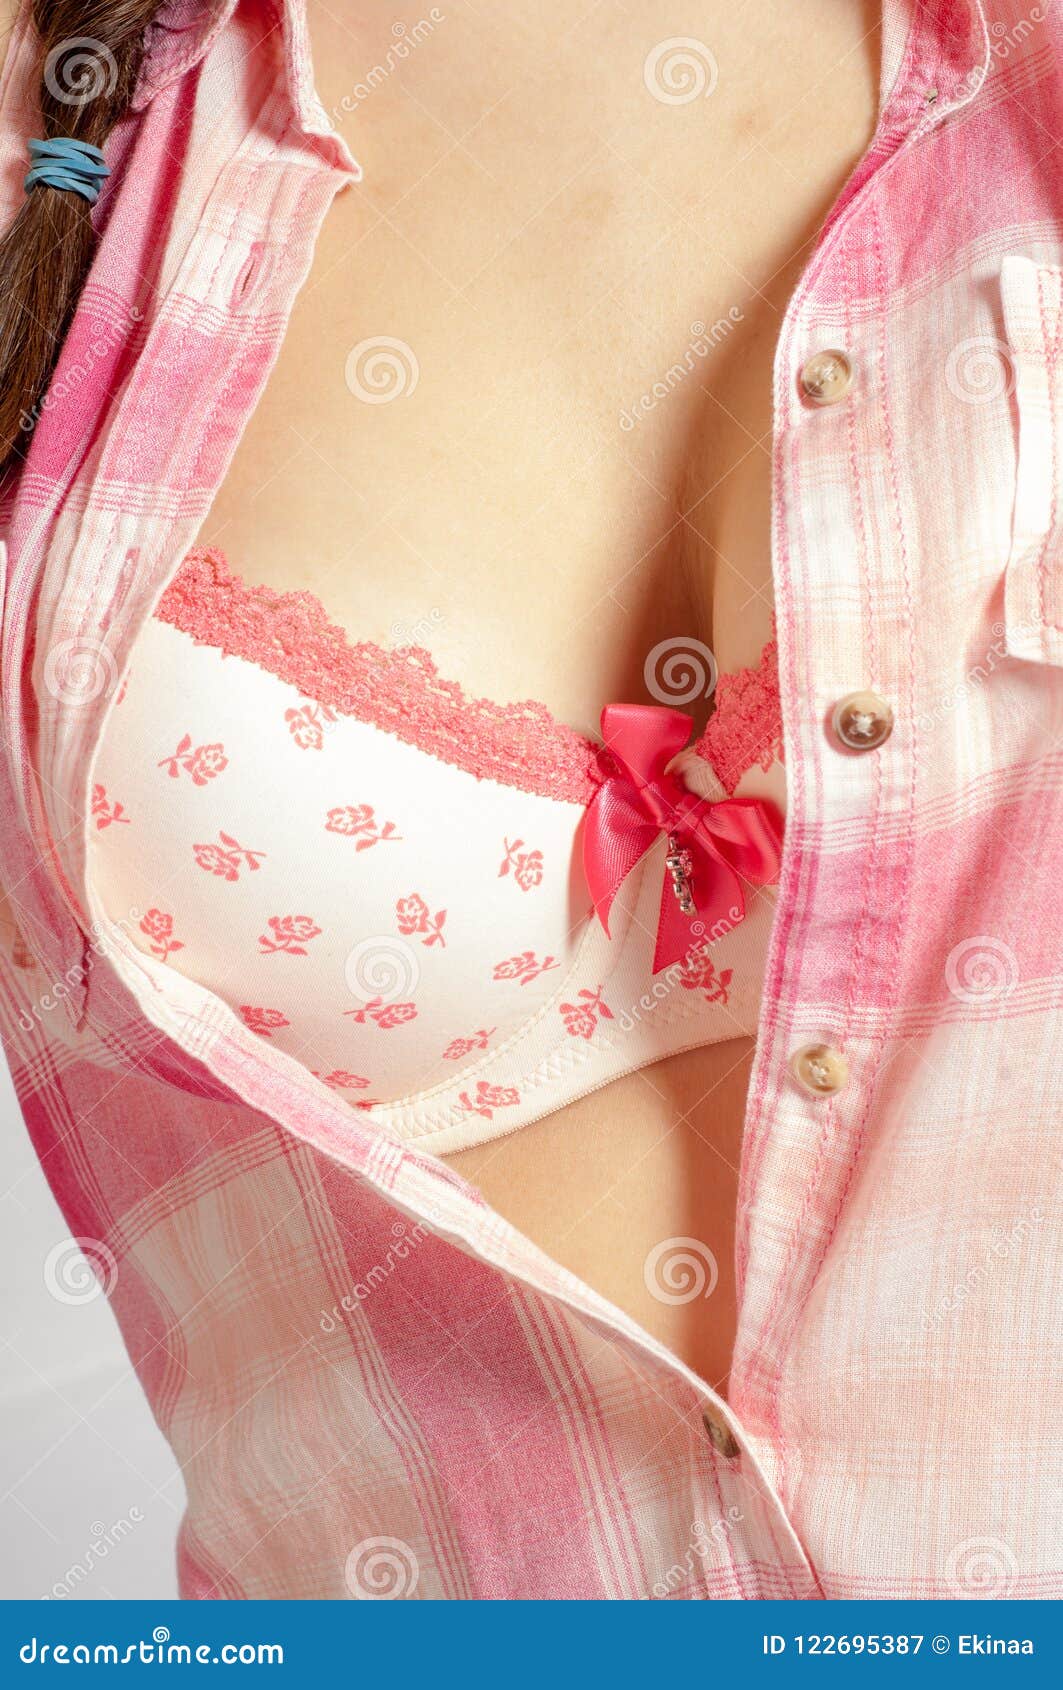 Women in pink bra tit image. Image of - 122695387